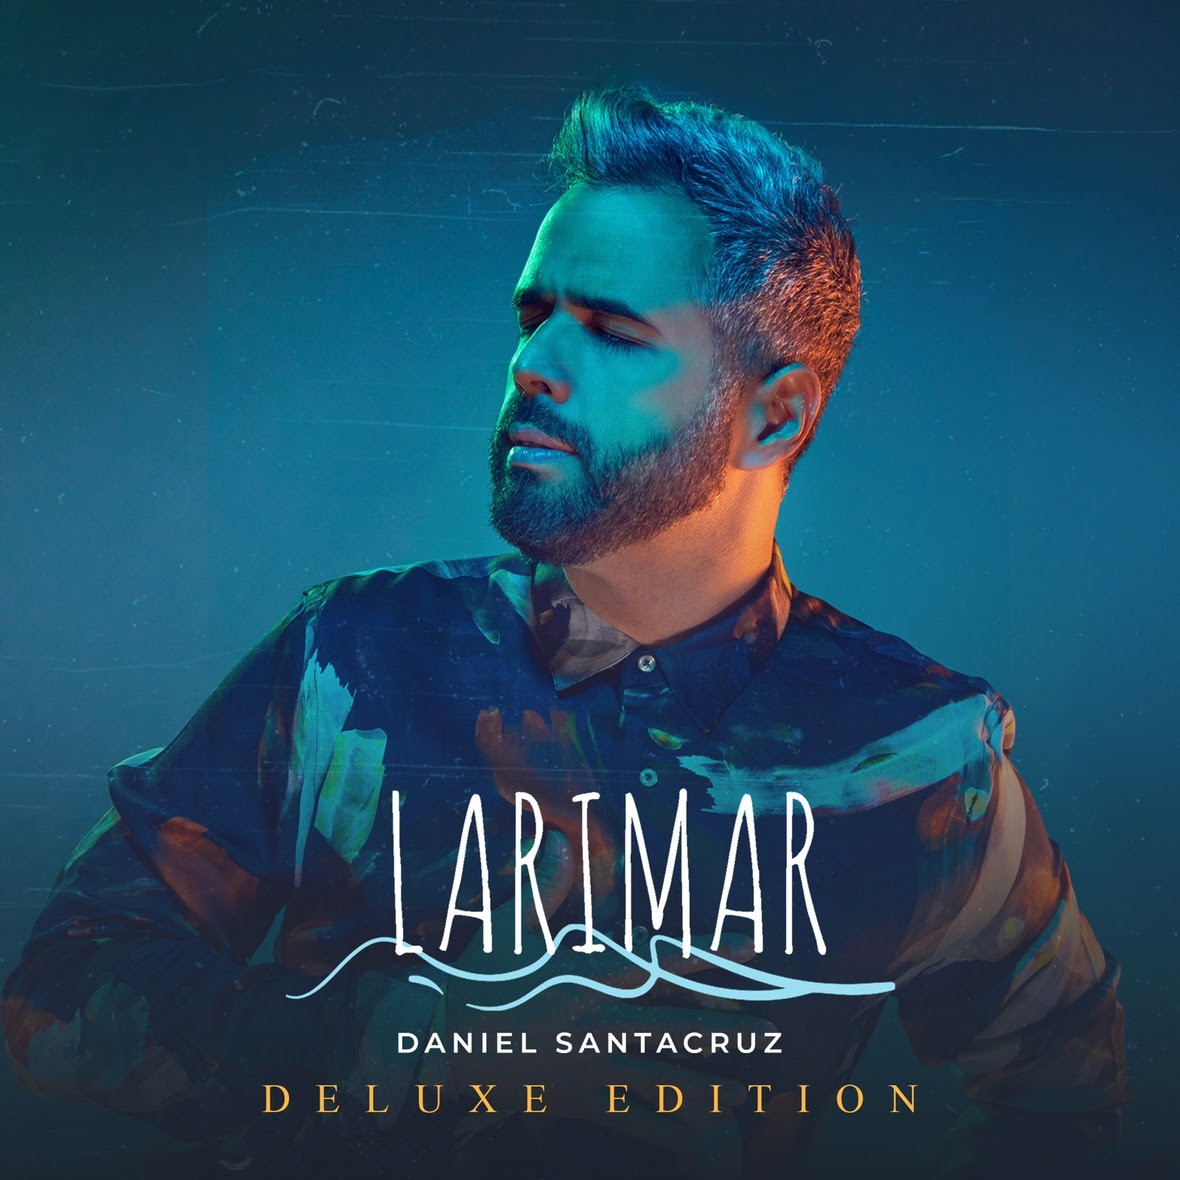 Daniel Santacruz lança documentário junto com o novo álbum “Larimar Deluxe”